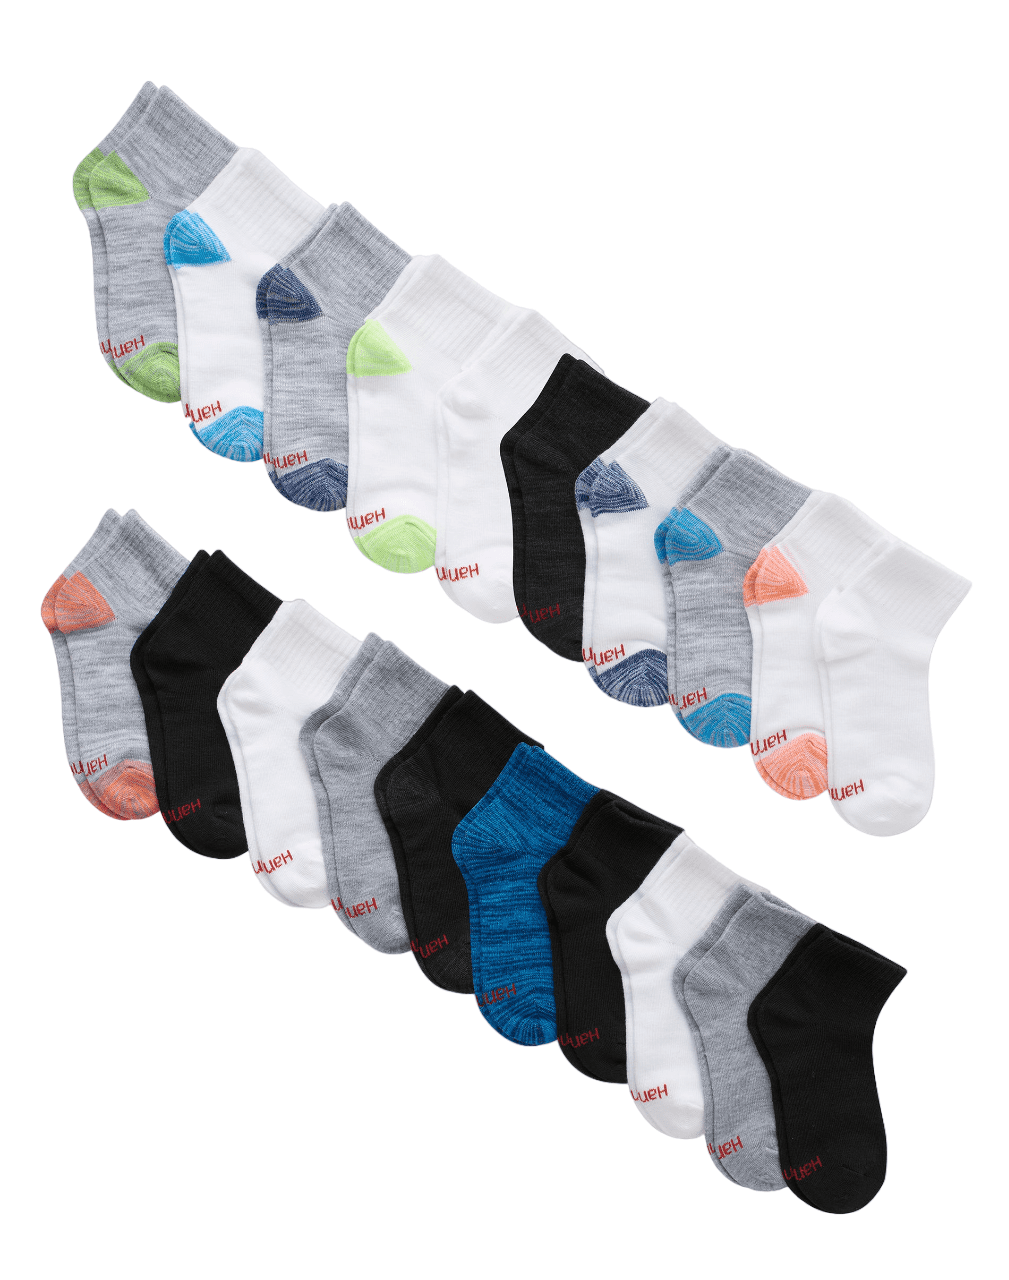 Hanes Boys Ankle Socks Super Value 20-Pack